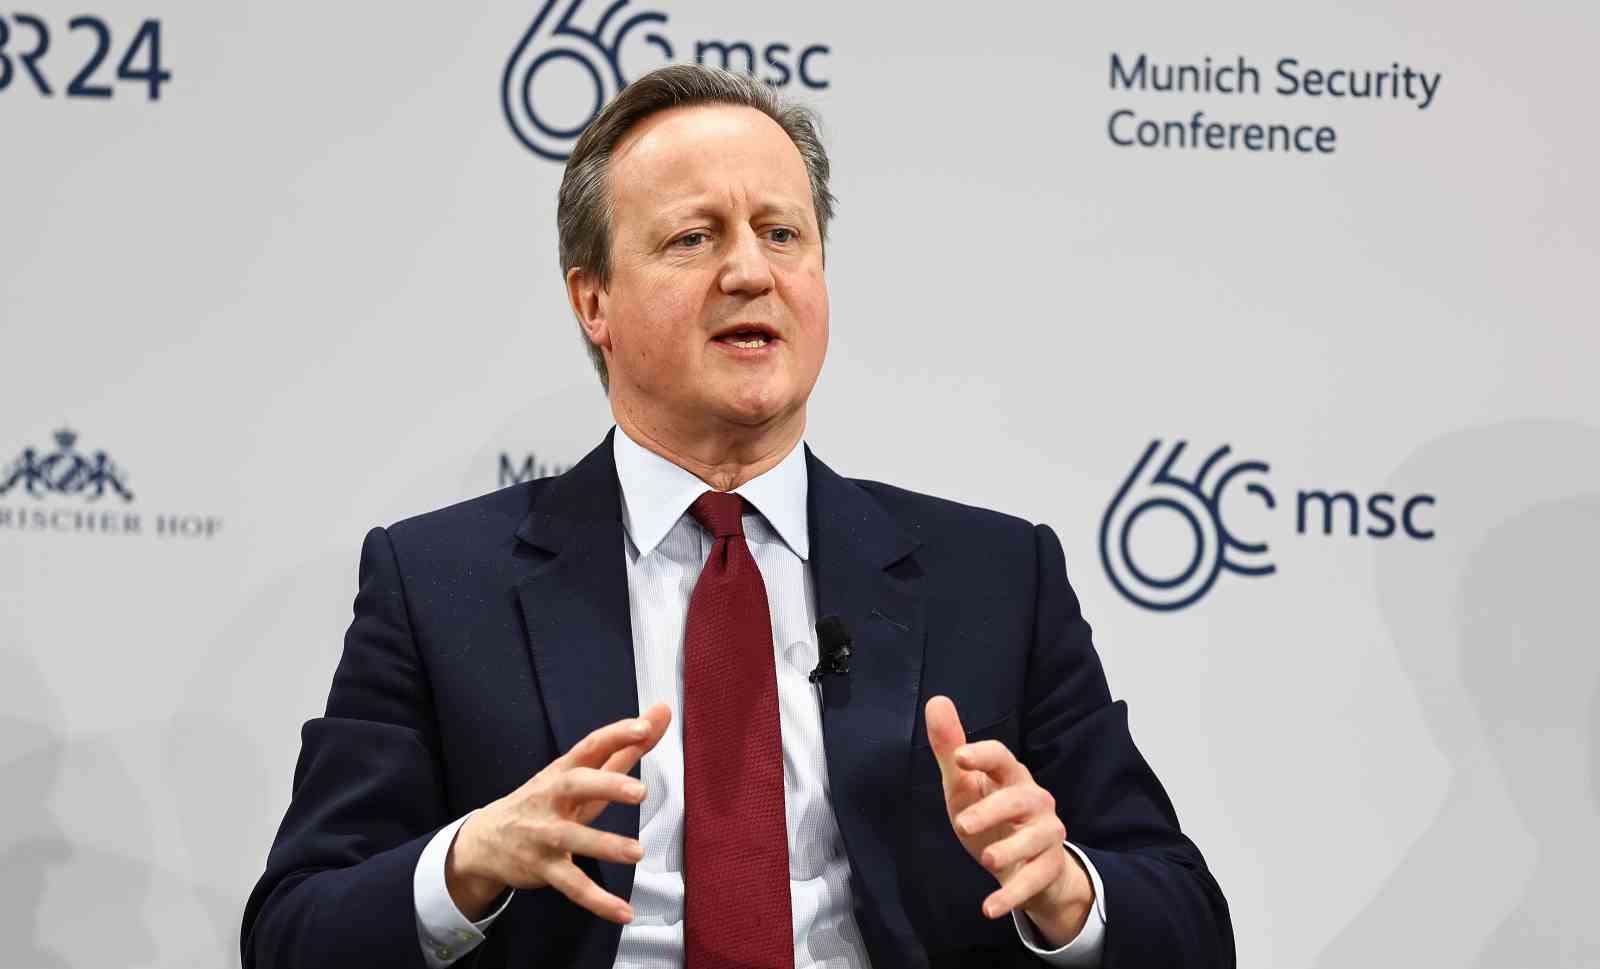 İngiltere Dışişleri Bakanı Cameron: “İsrail işgalci güçtür”